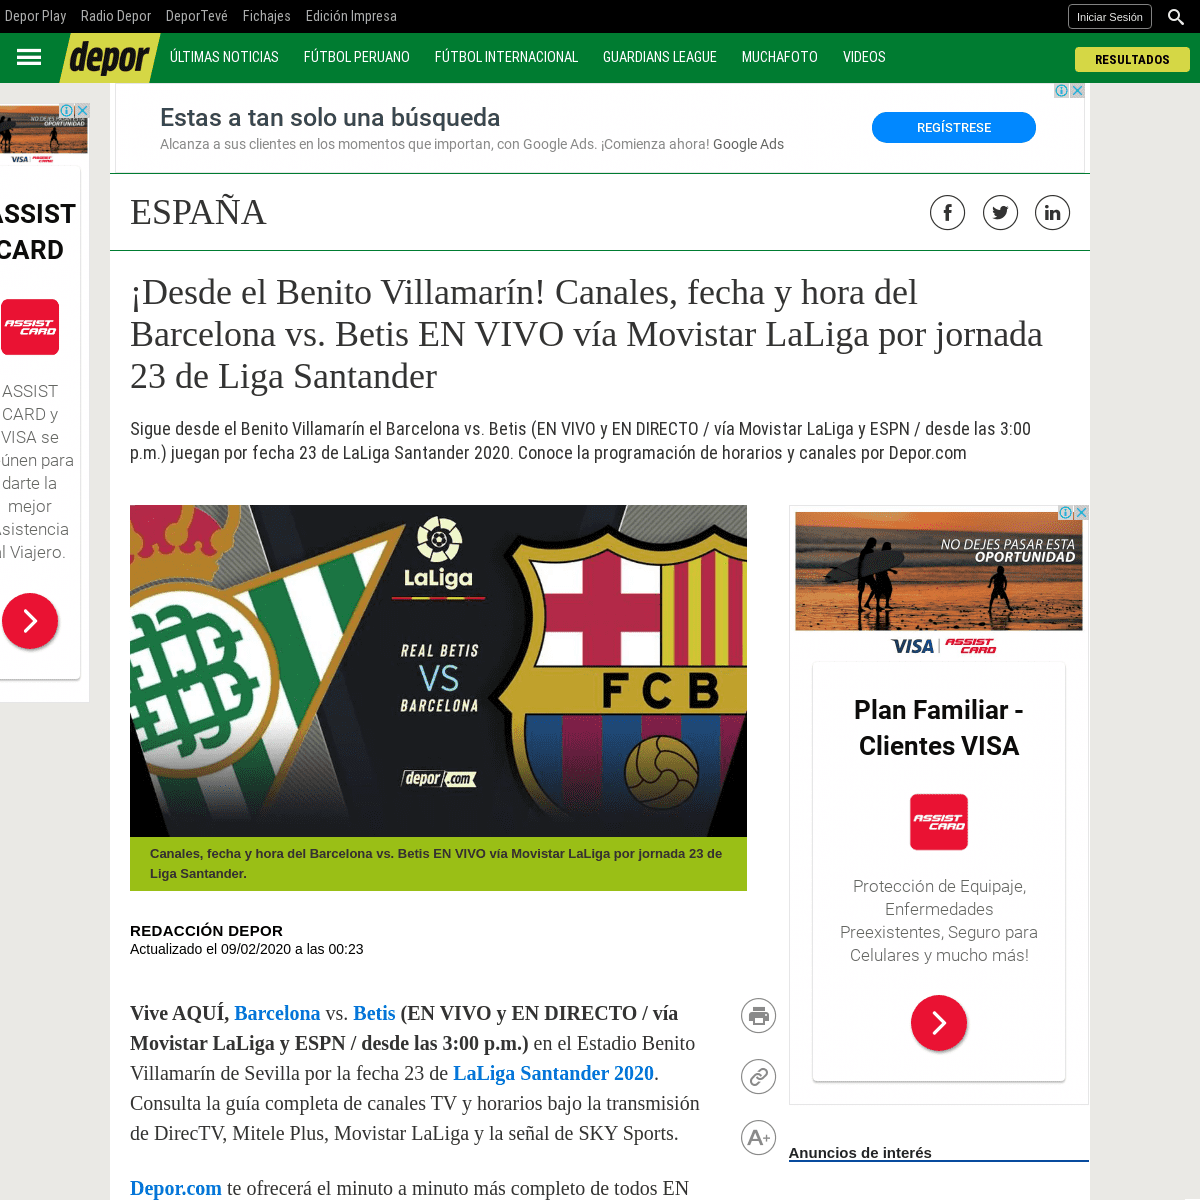 A complete backup of depor.com/futbol-internacional/espana/barcelona-vs-real-betis-en-vivo-ver-fecha-canales-tv-horarios-online-